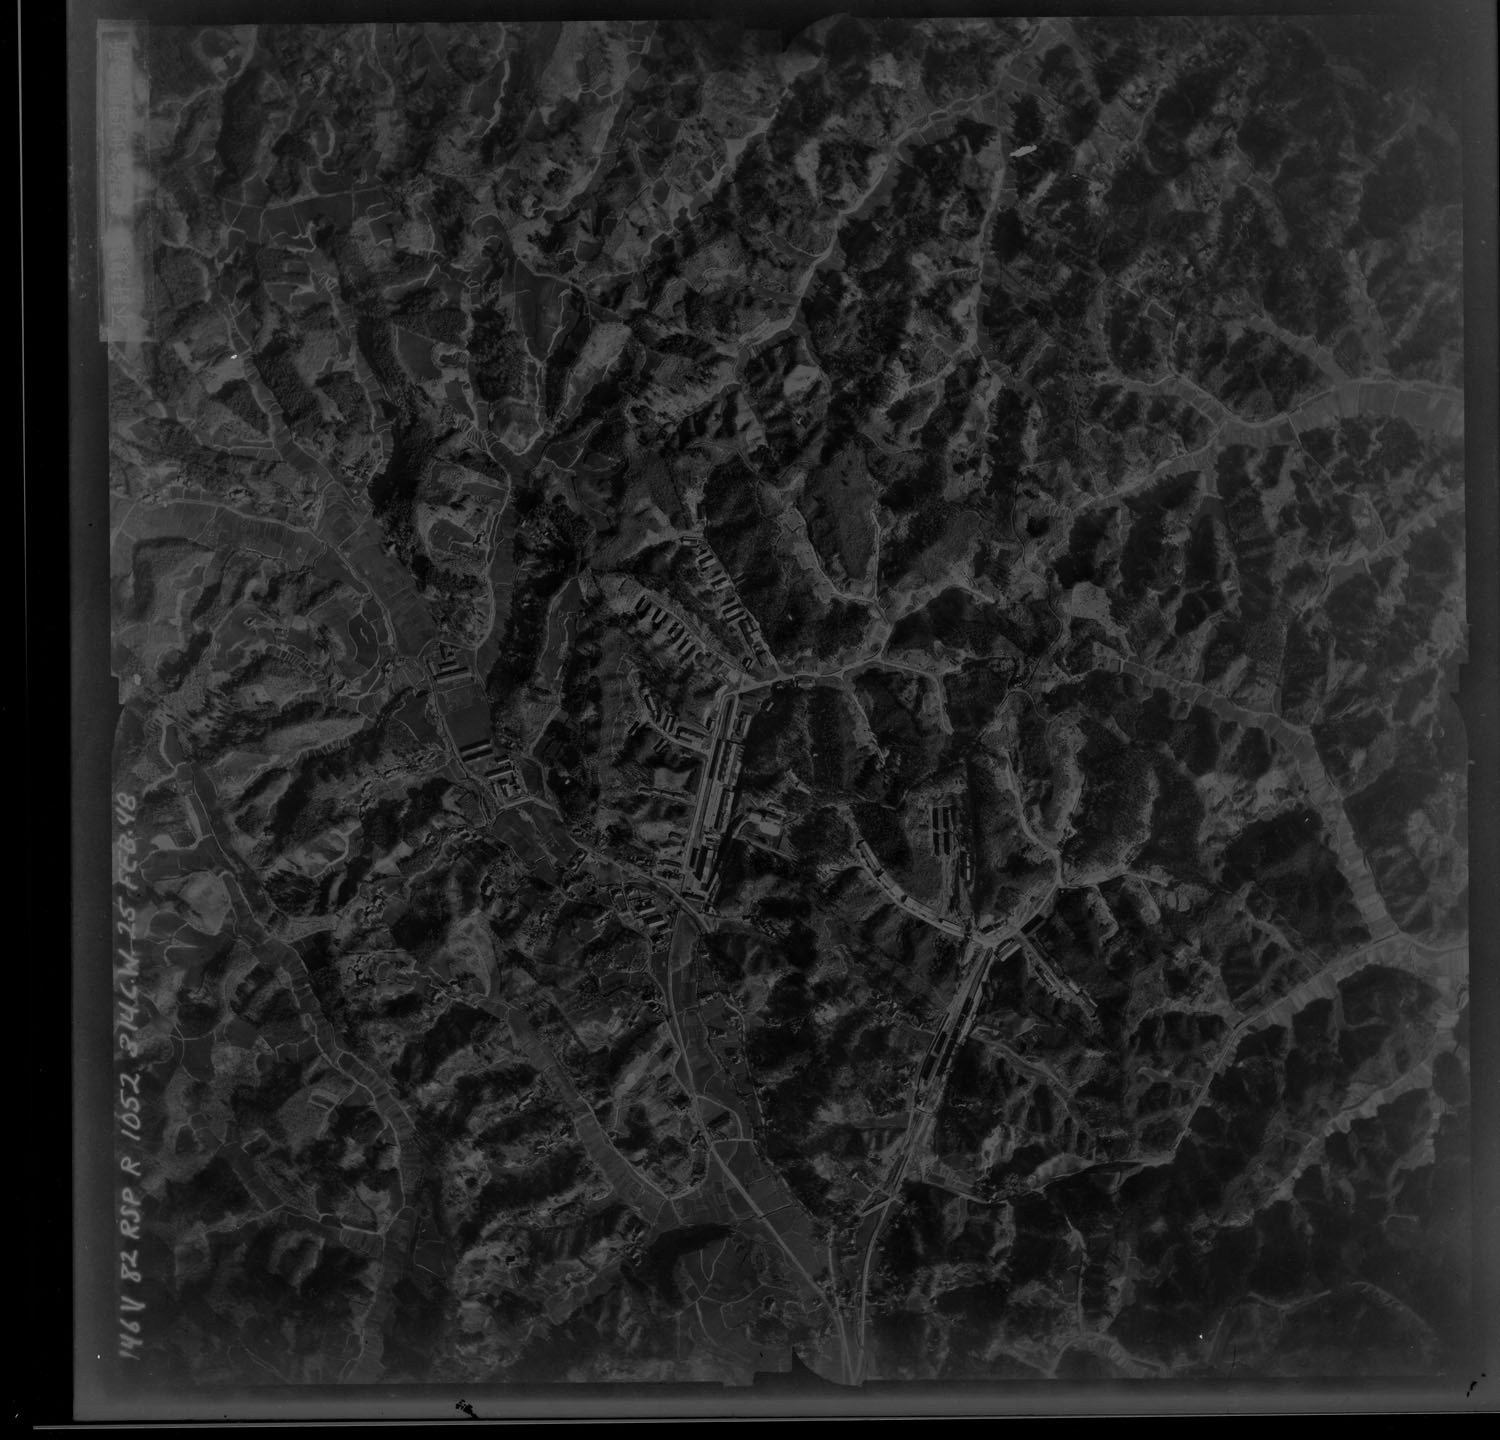 終戦2年後に米軍が撮影した田奈弾薬庫の全景。底辺が長津田駅方向である。入り組んだ谷戸地形の至るところに弾薬製造関連施設や弾薬庫の擁壁がある。北側部分は現在白鳥湖となって水没している。 国土地理院国土変遷アーカイブ、地図・空中写真閲覧サービス　1948年2月25日米軍撮影、コース：R1052 写真番号146、市区町村名：横浜市青葉区。 https://mapps.gsi.go.jp/maplibSearch.do?specificationId=198676。